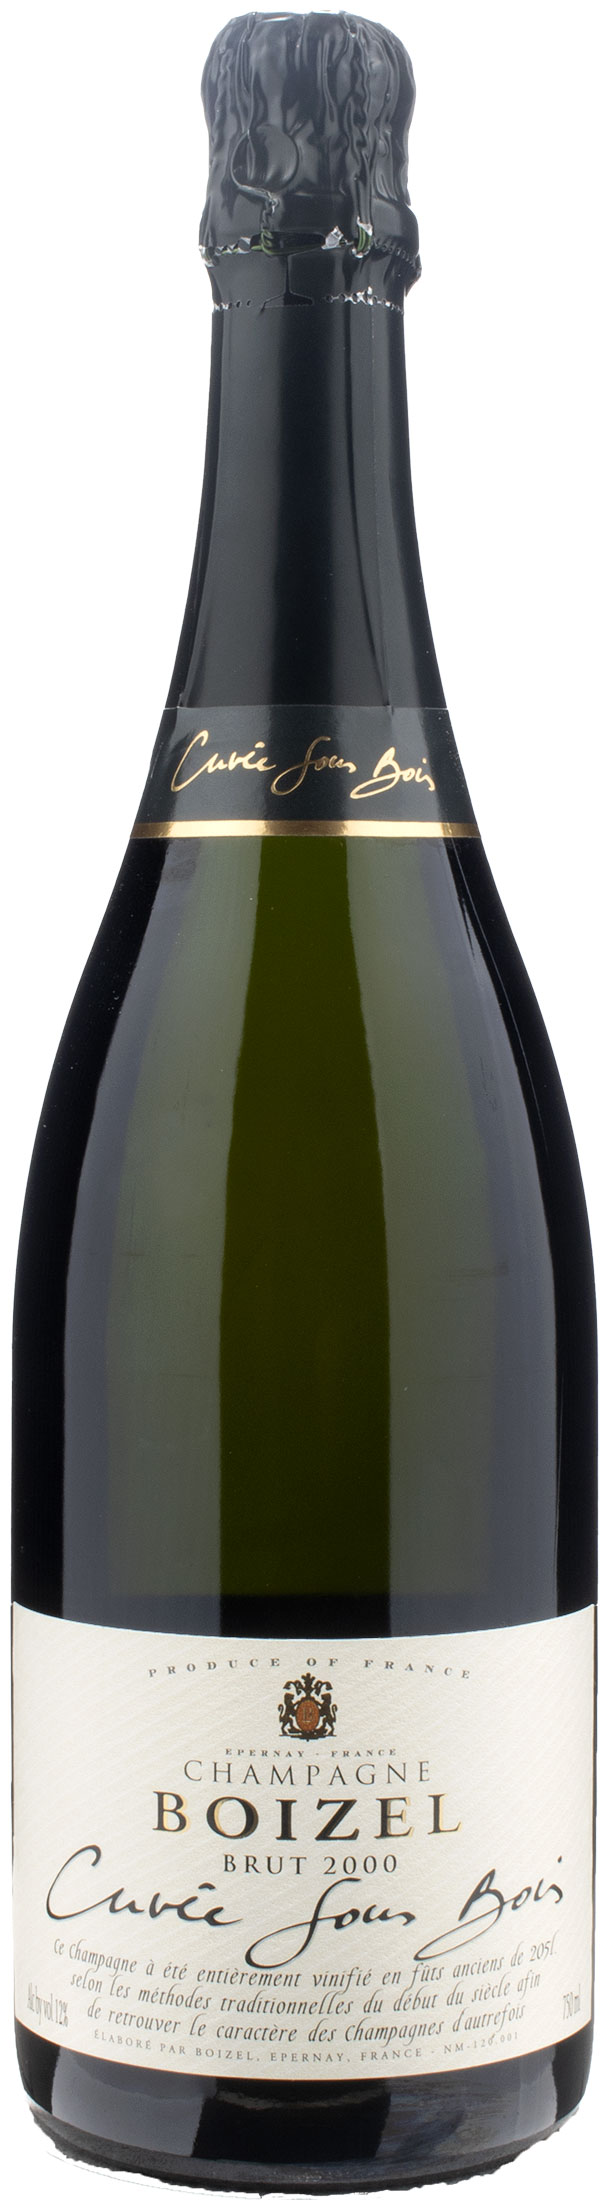 Boizel Champagne Cuvée Sous Bois Brut 2000